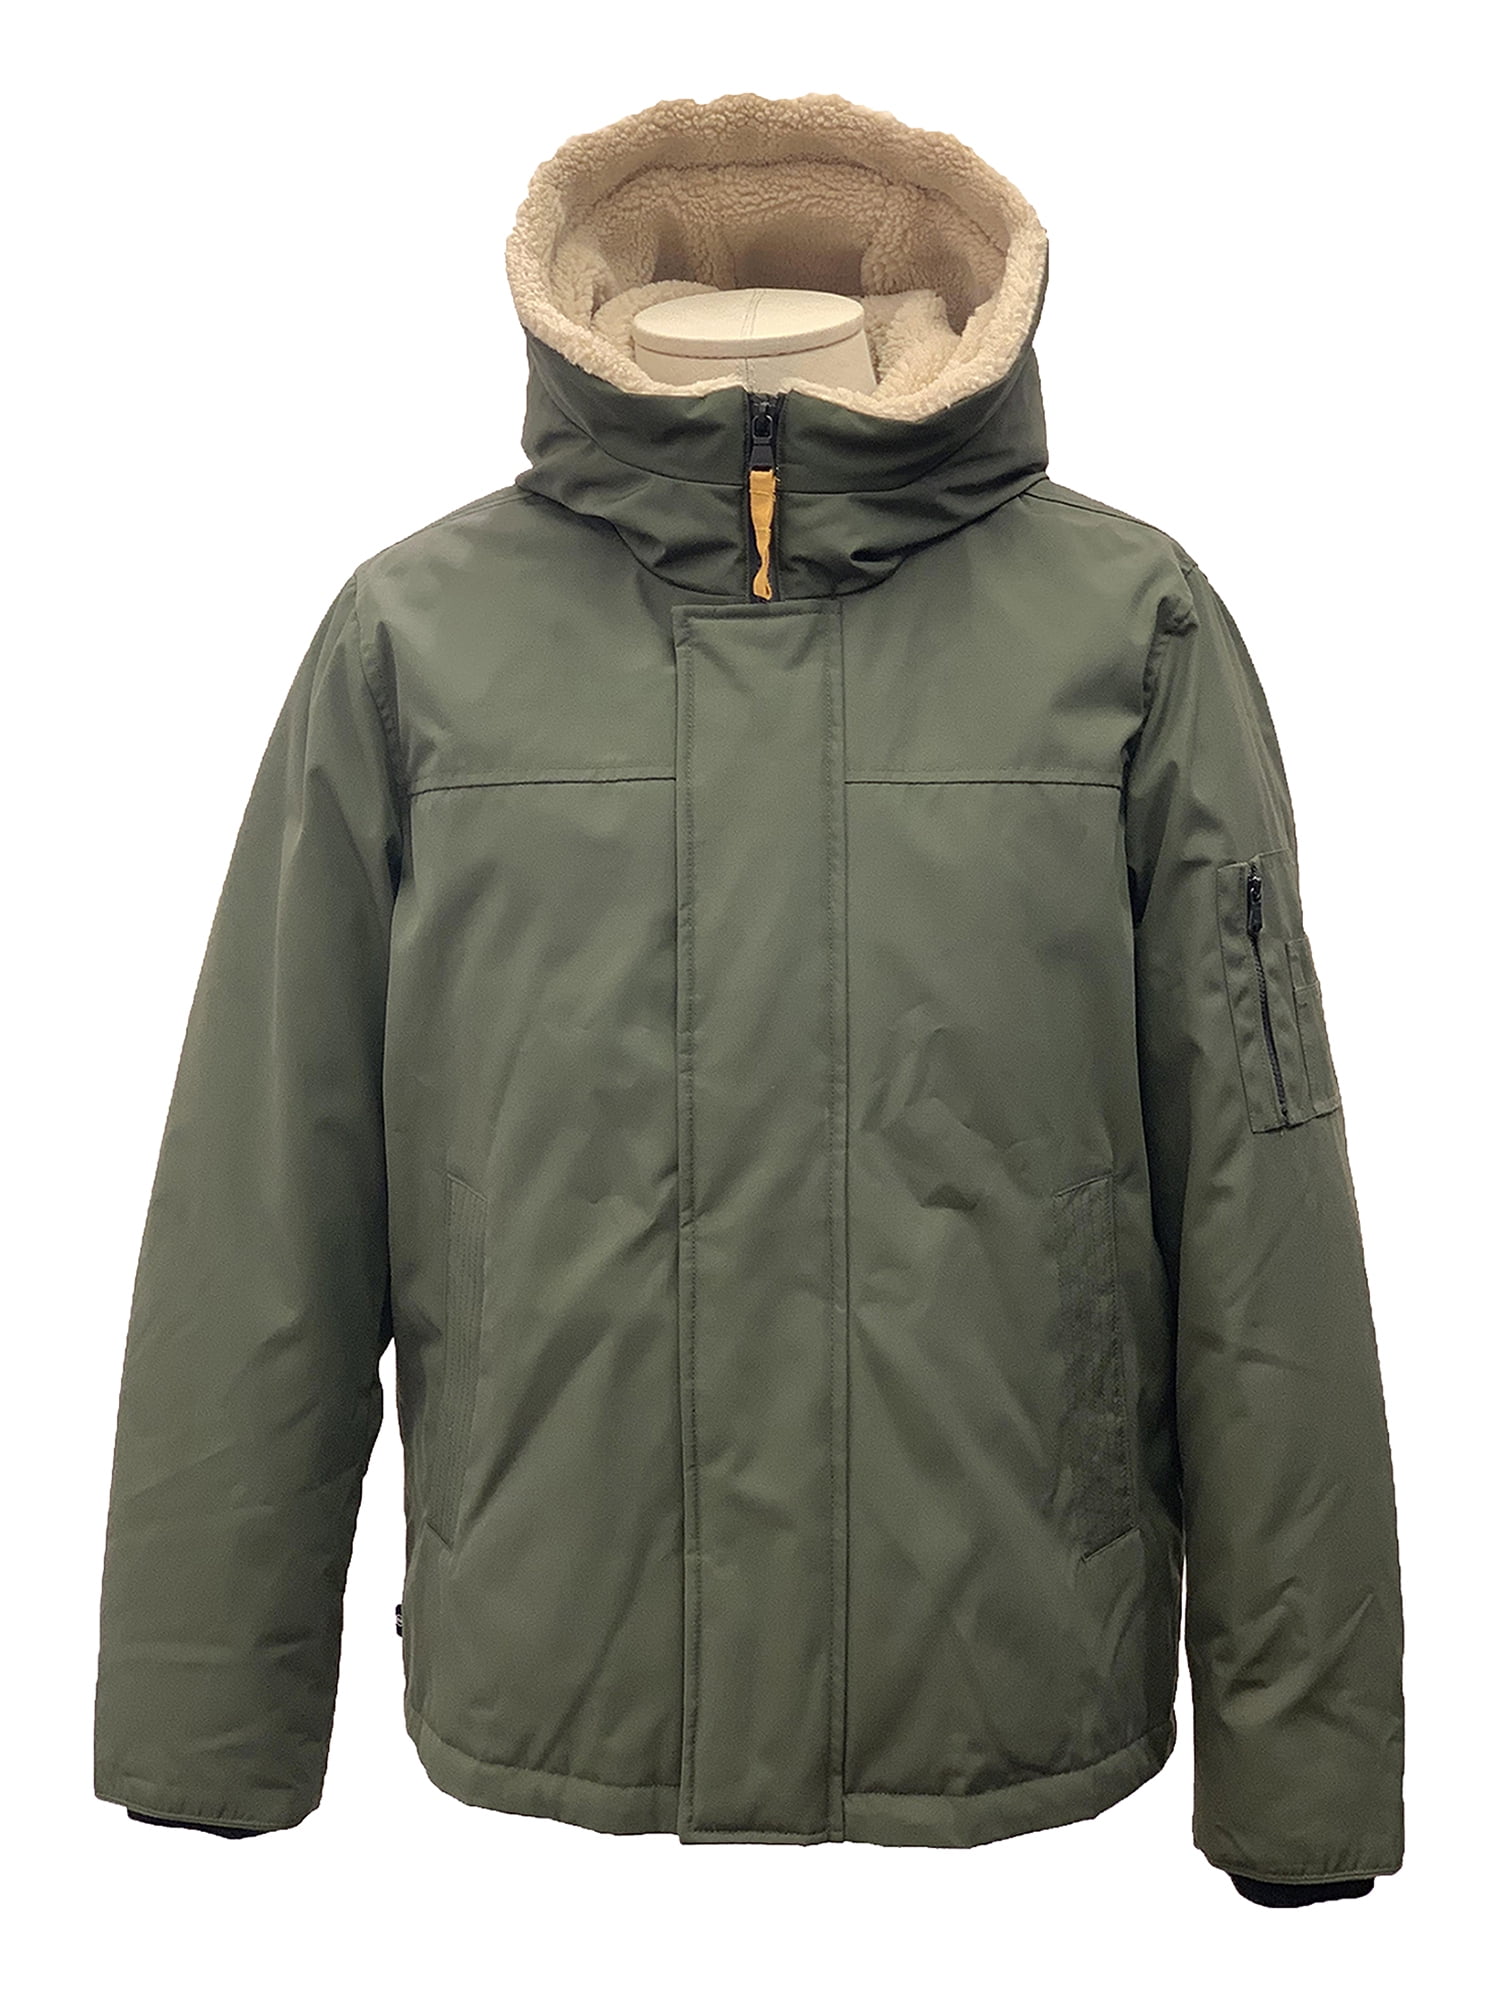 IZOD Men's Hooded Sherpa Trimmed Bomber Jacket - Walmart.com